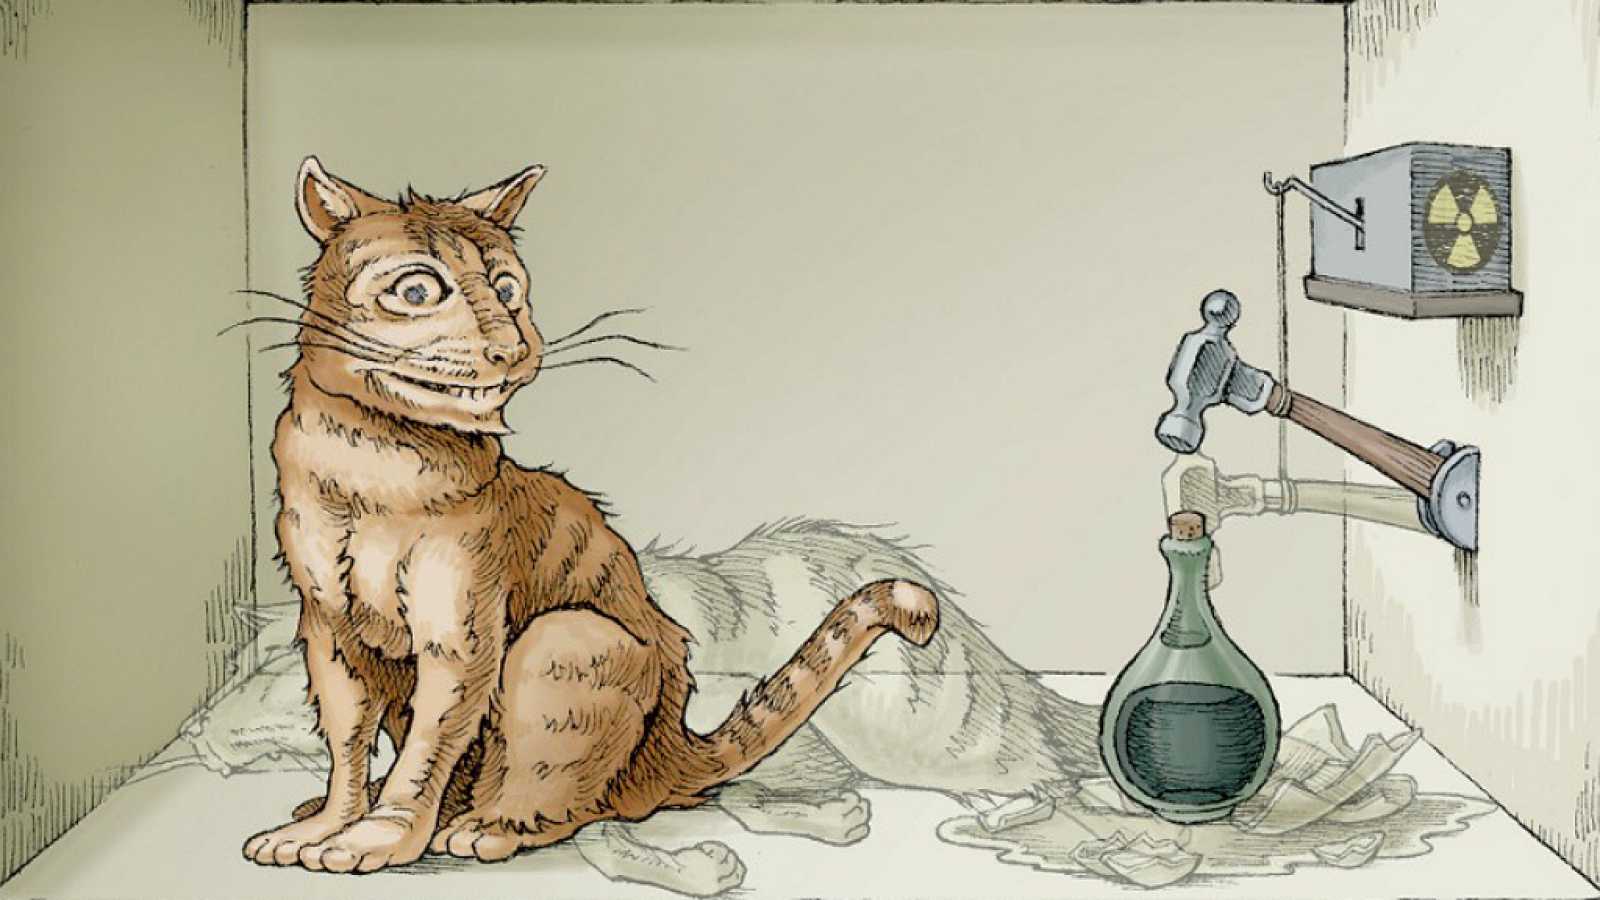 Já ouviu falar sobre a teoria do gato de schrödinger? Confira mais detalhes